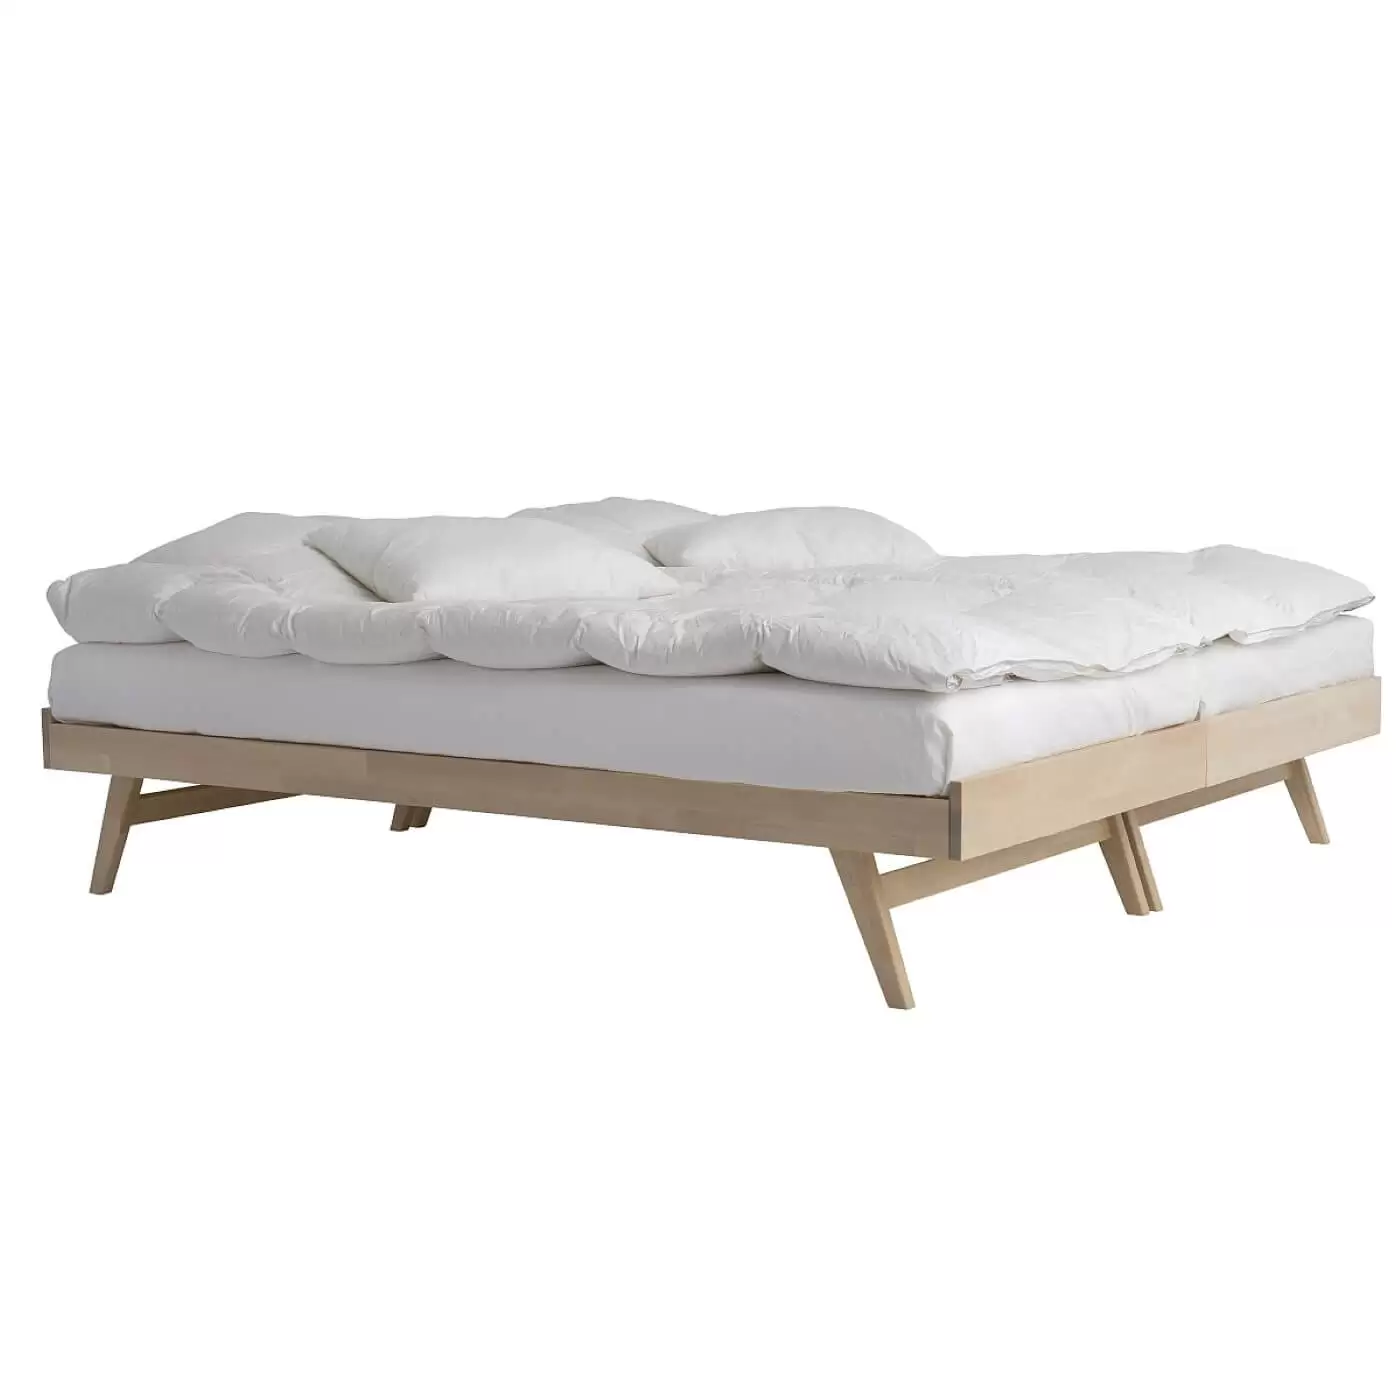 Łóżko na nóżkach NOTTE. Dwa łóżka drewniane z materacami i białą pościelą złączone, stojące razem obok siebie. Praktyczny skandynawski design